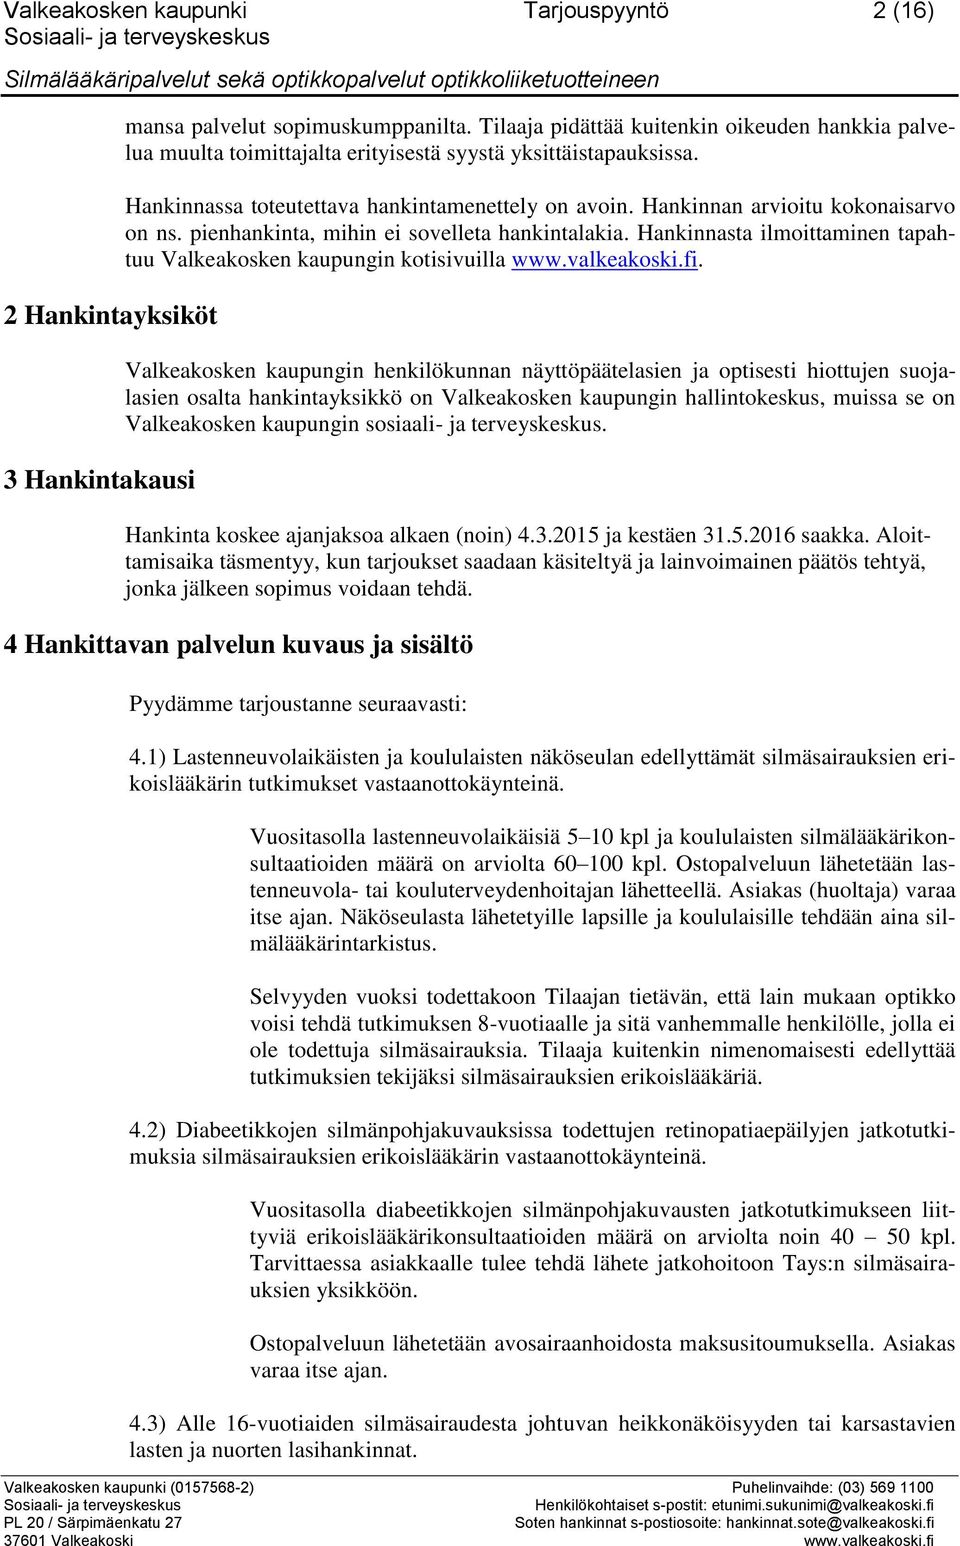 Hankinnan arvioitu kokonaisarvo on ns. pienhankinta, mihin ei sovelleta hankintalakia. Hankinnasta ilmoittaminen tapahtuu Valkeakosken kaupungin kotisivuilla www.valkeakoski.fi.